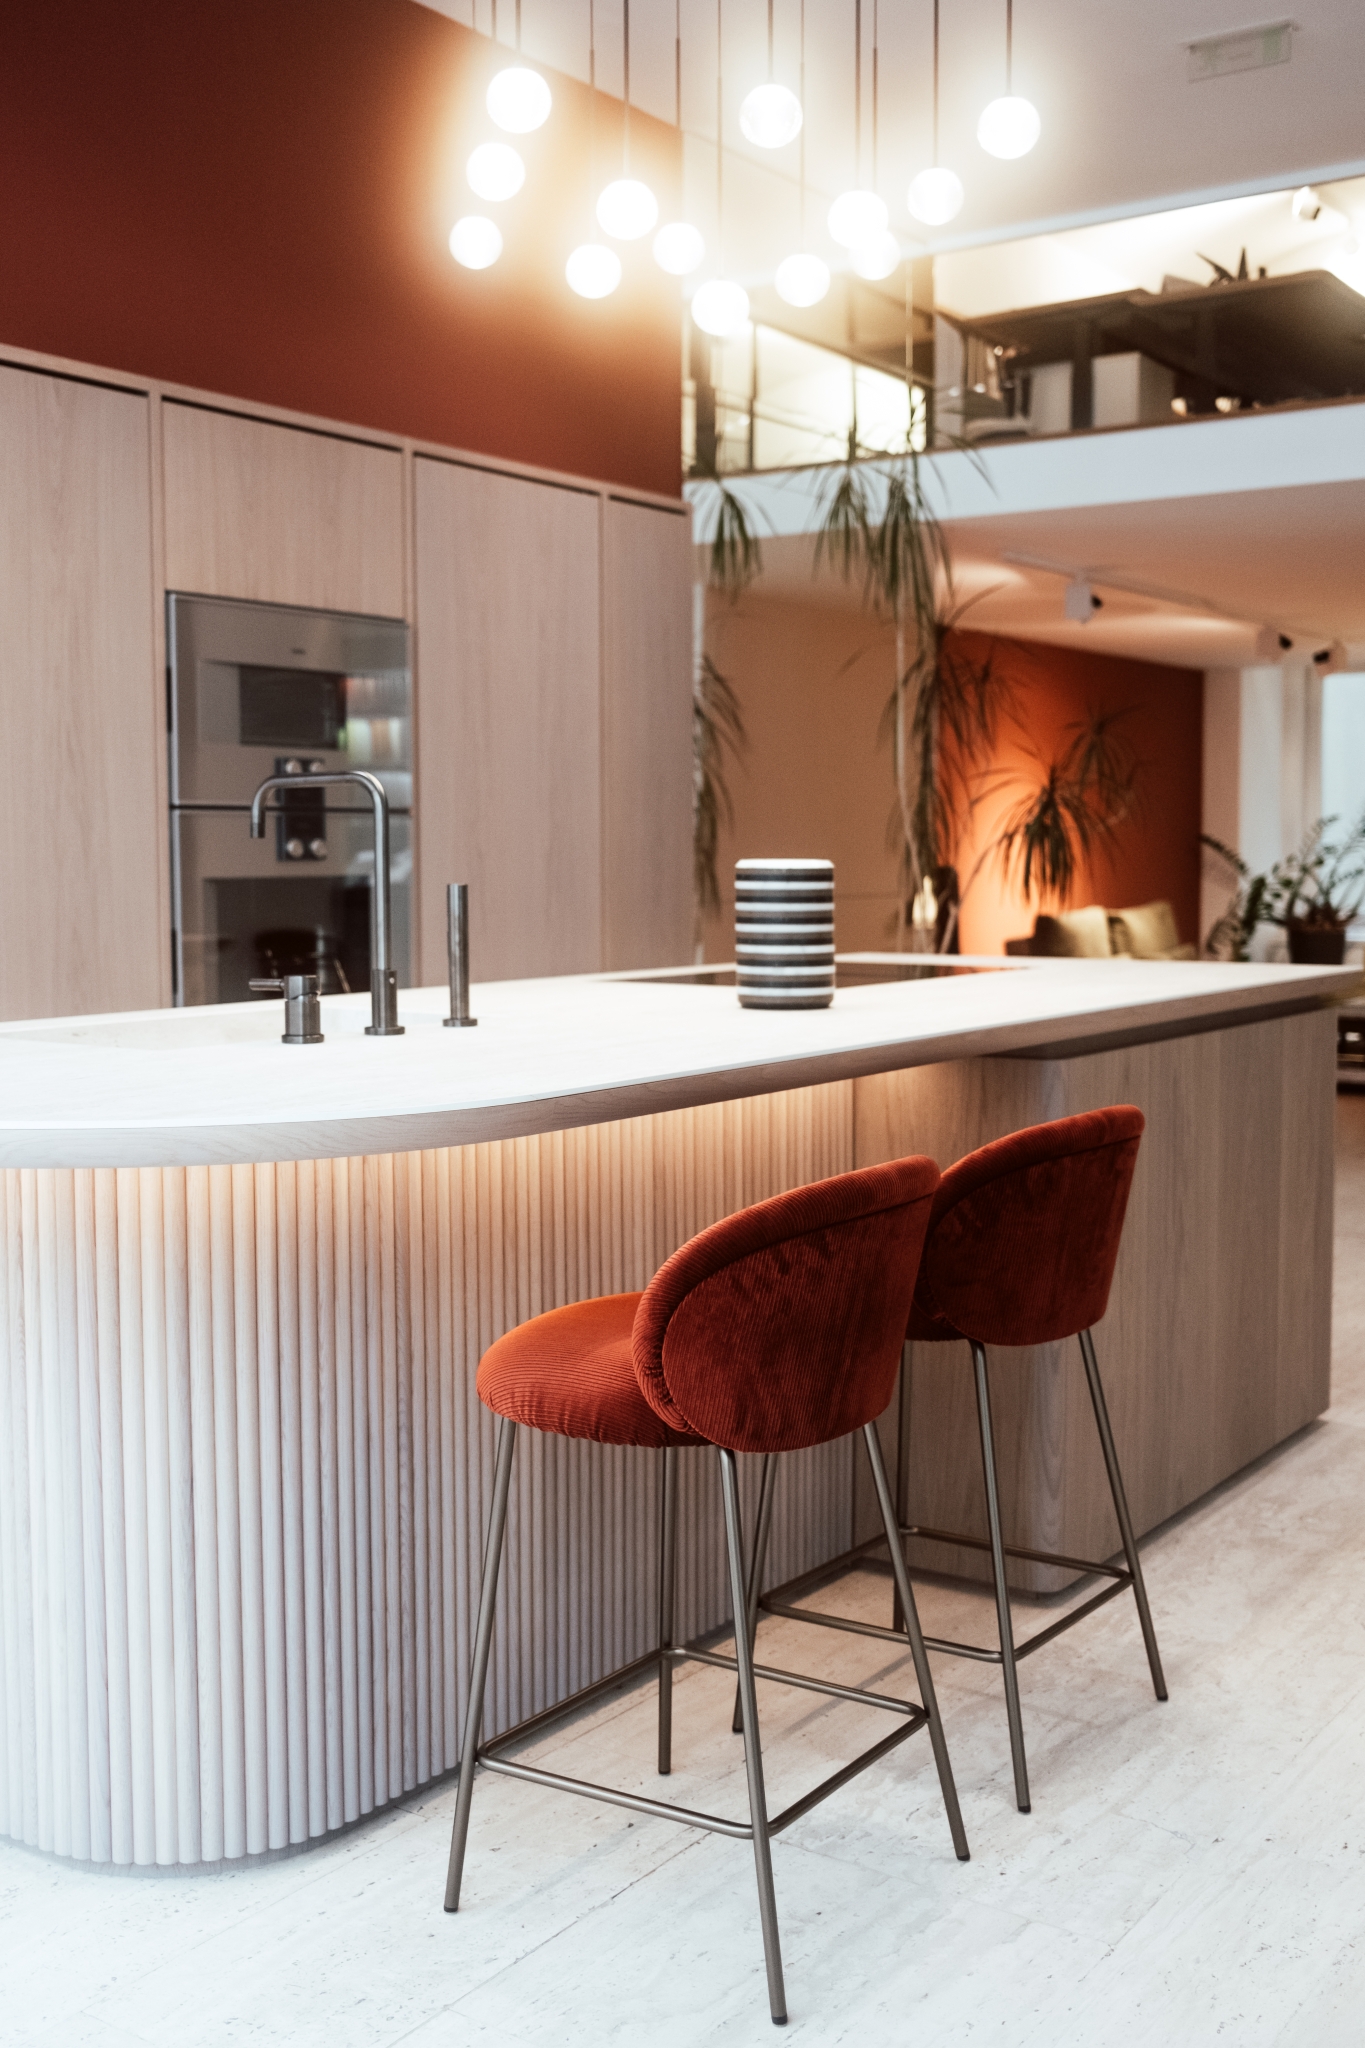 Moderne Kücheneinrichtung mit einer eleganten Kücheninsel, Pendelleuchten und stilvollen roten Barhockern.